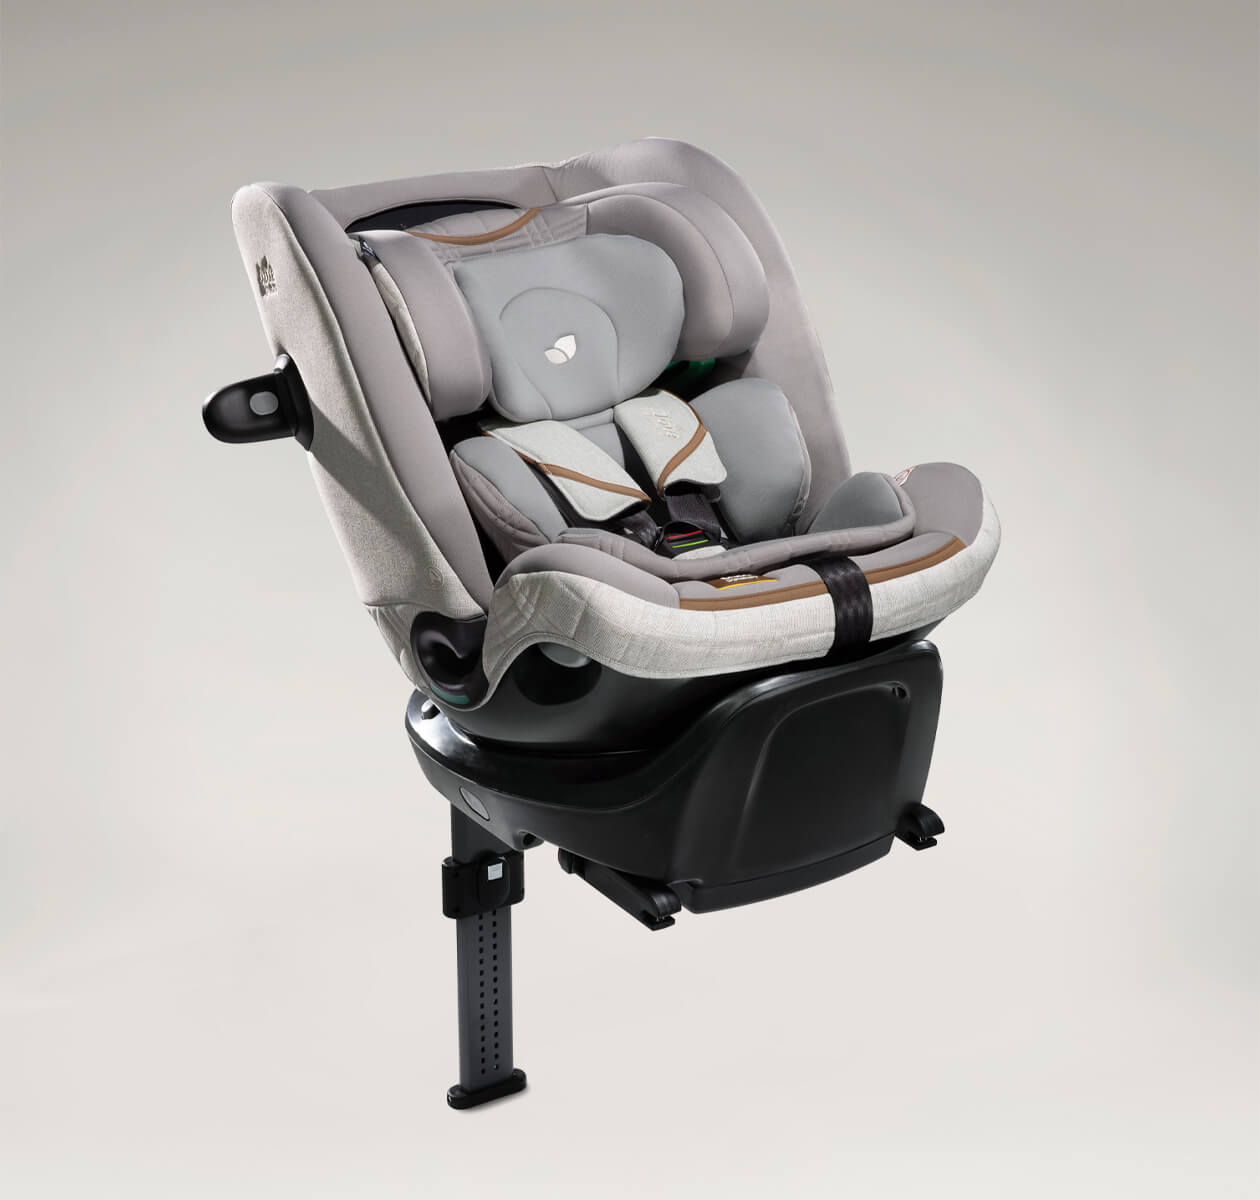 La revolución de la silla de auto: la silla giratoria Joie I-Spin 360